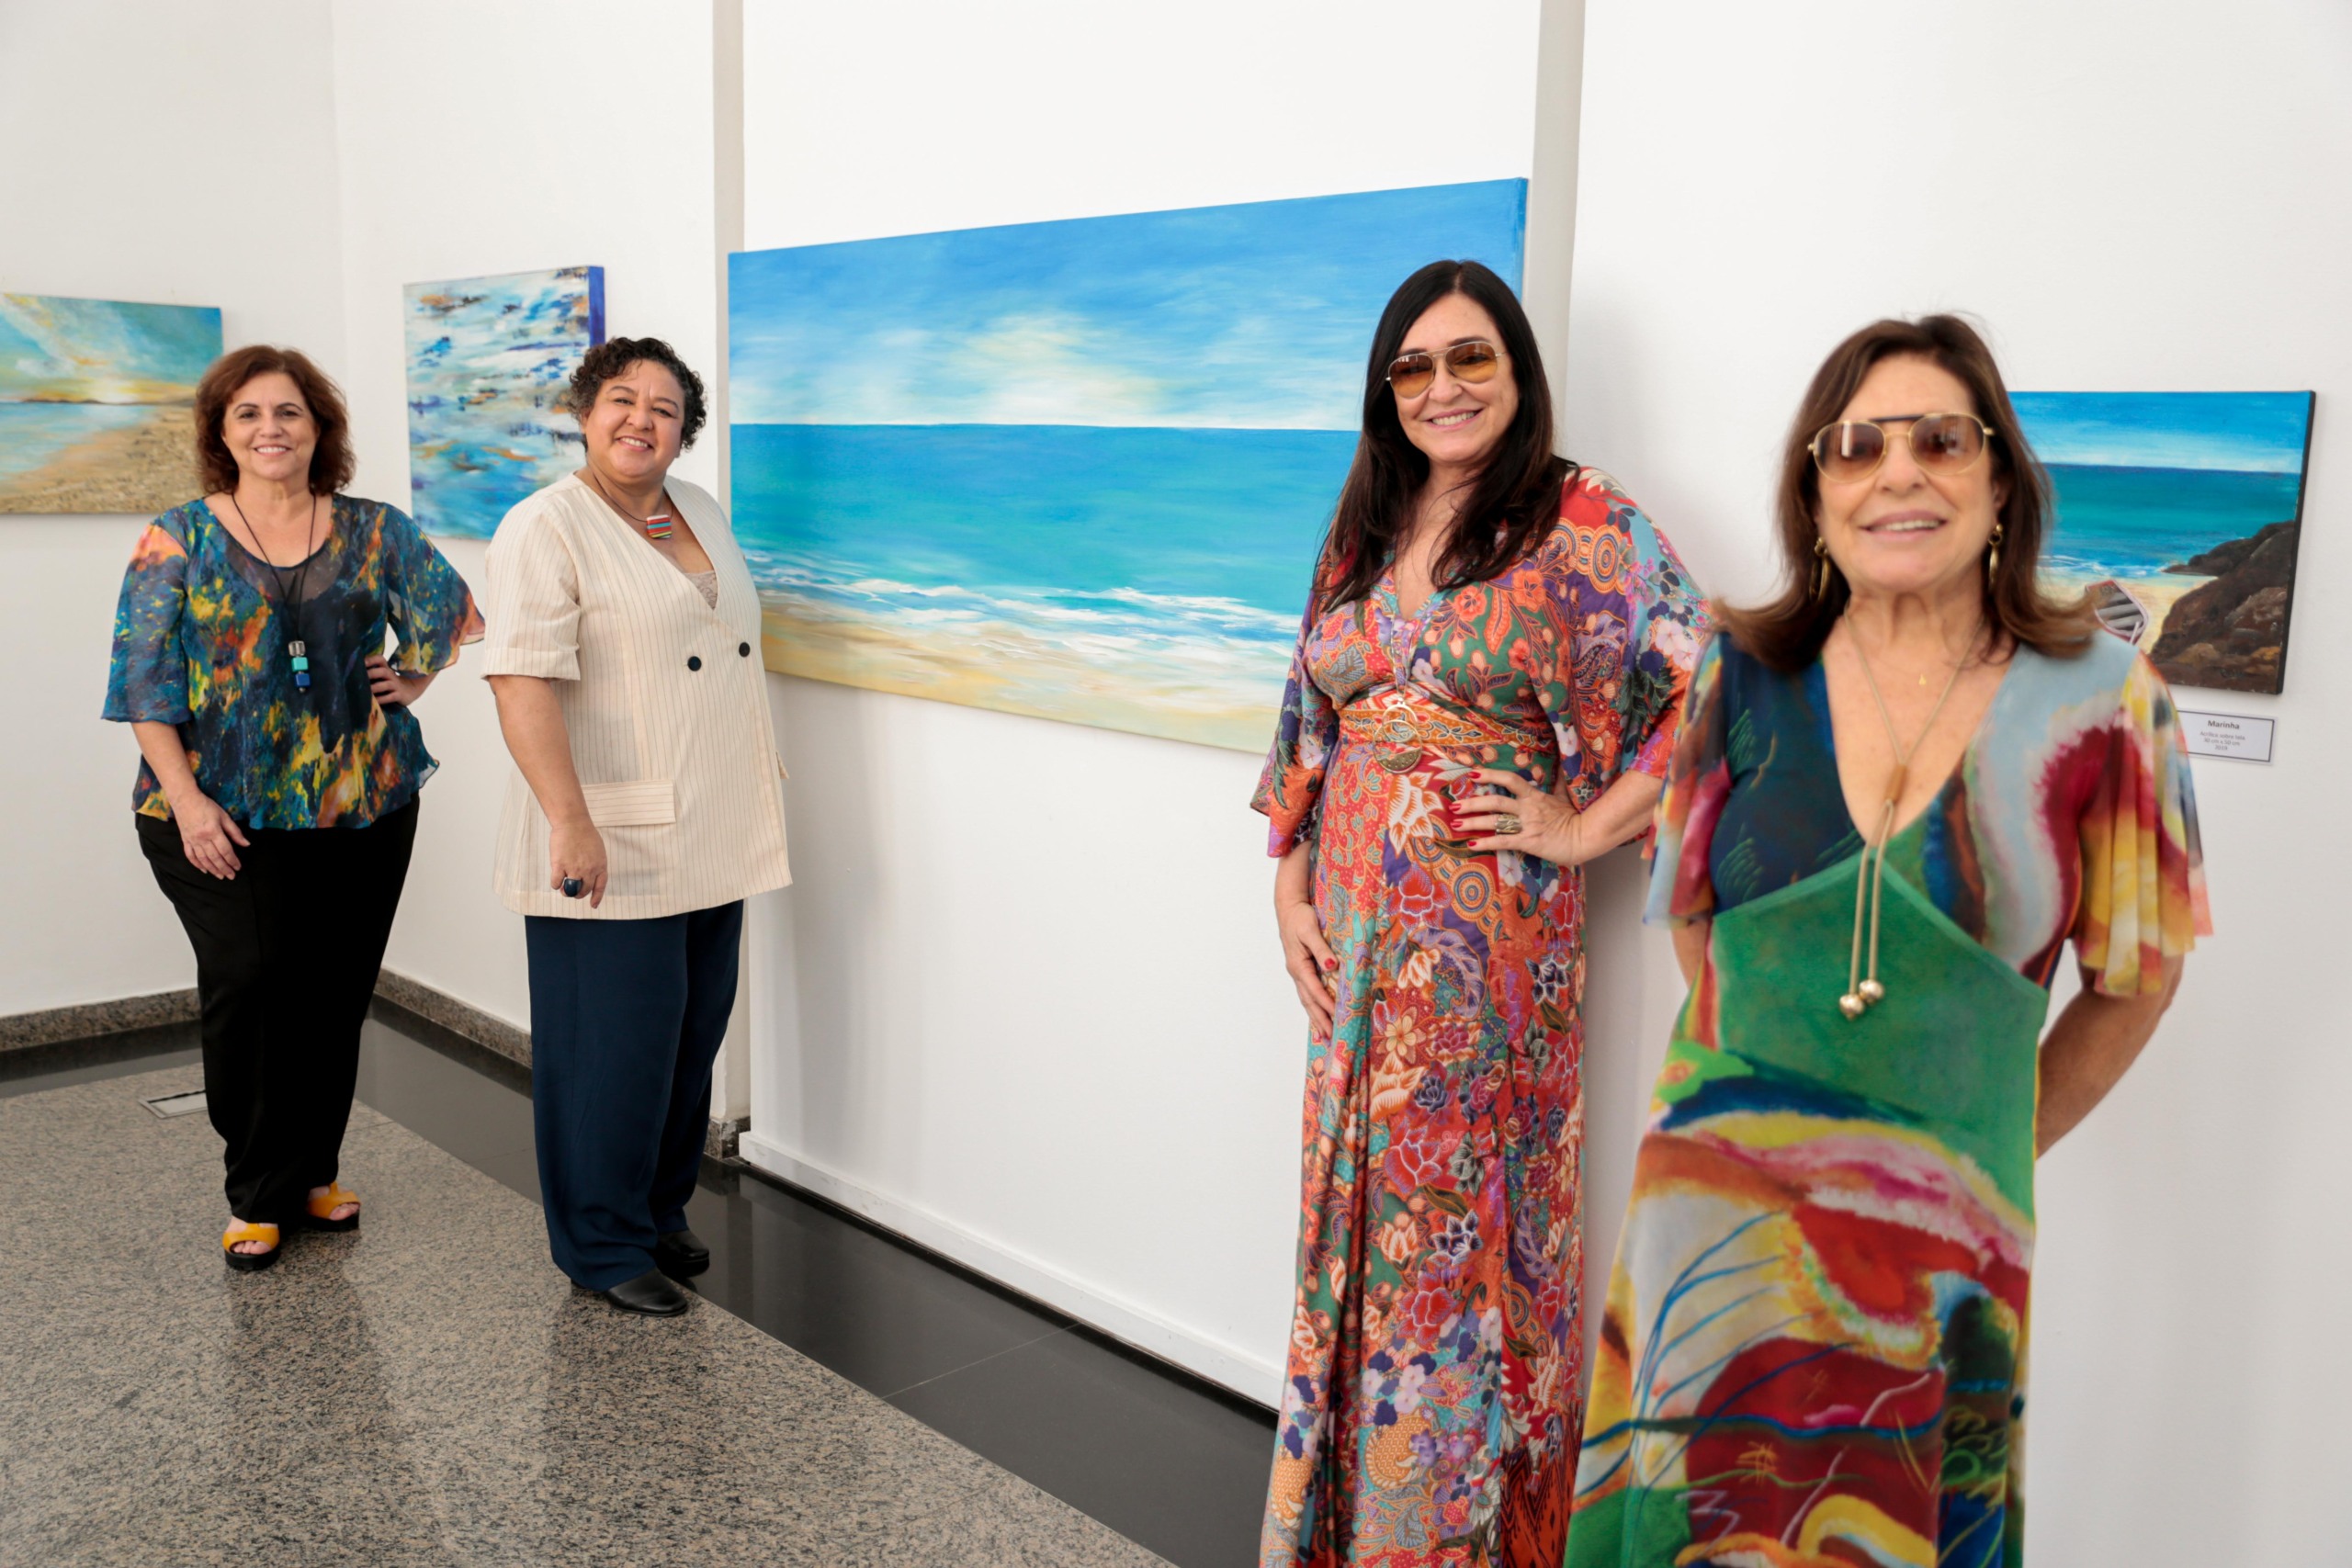 A exposição “In Progress – Marinhas” inaugurou em alto estilo no Espaço Cultural Correios Niterói